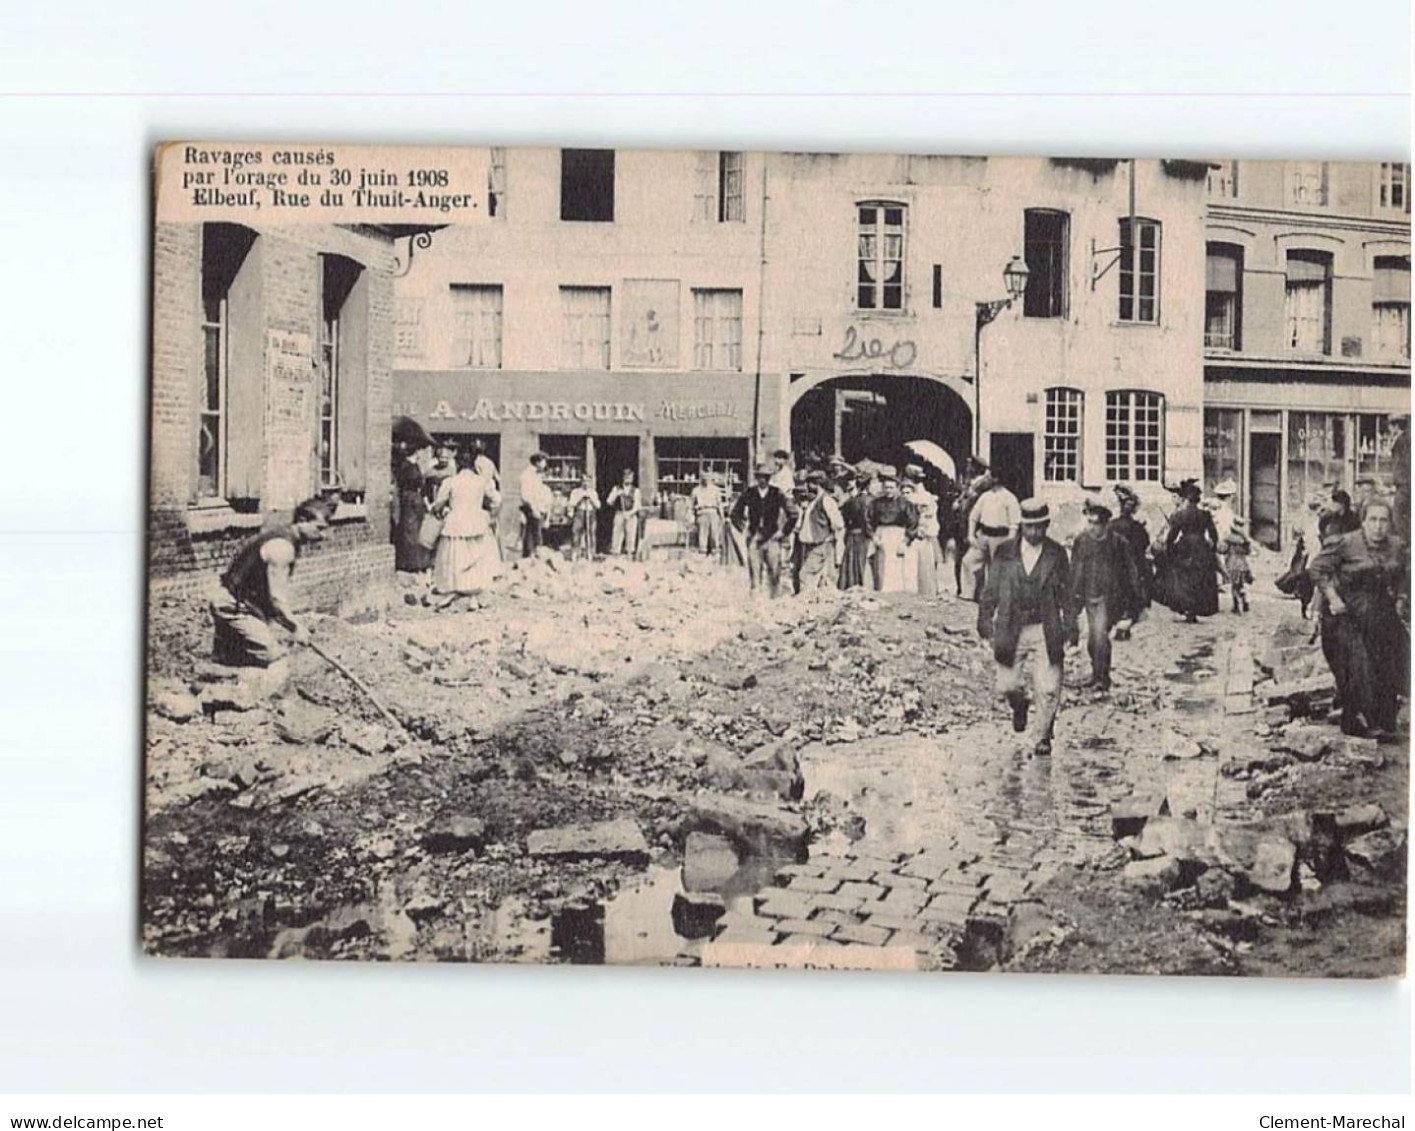 ELBEUF : Rue Du Thuit-Anger, Ravage Causés Par L'Orage De Juin 1908 - état - Elbeuf